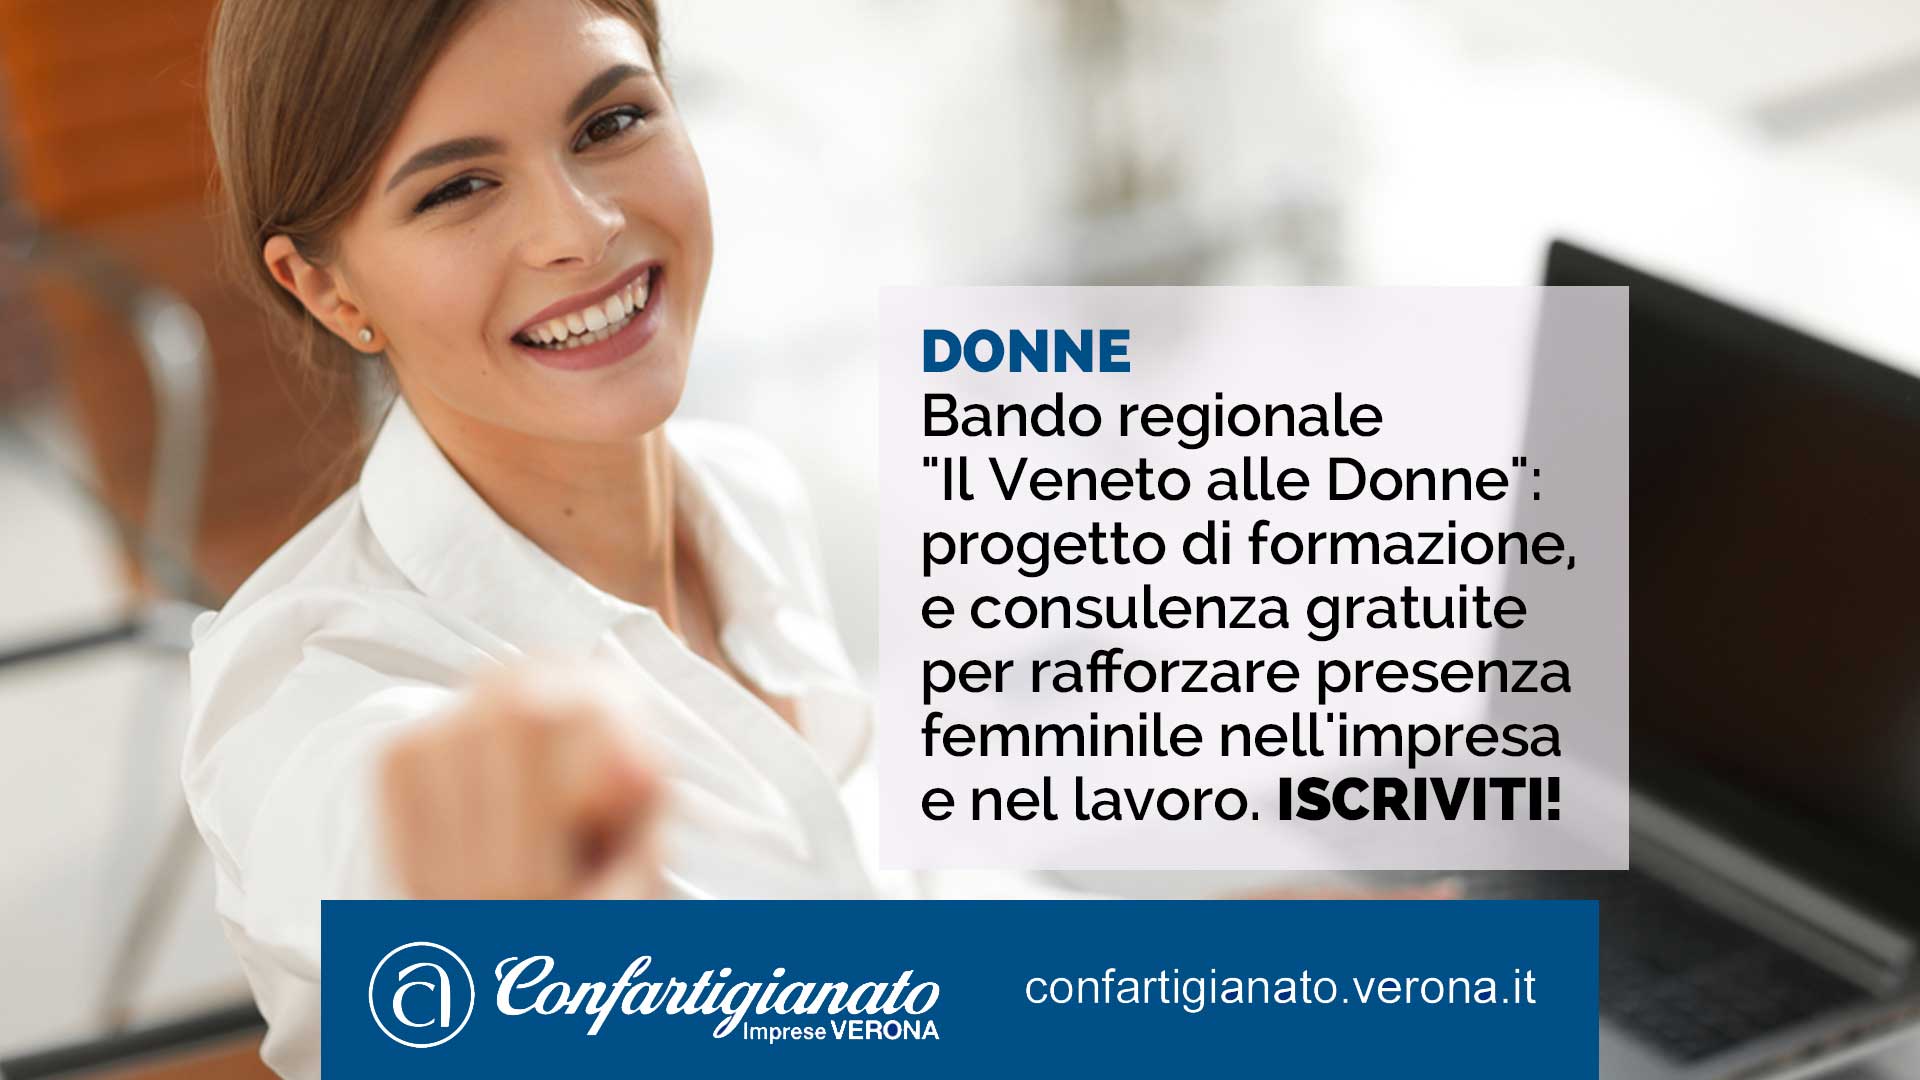 DONNE – Bando regionale "Il Veneto alle Donne": progetto di formazione, consulenza e progettazione gratuite per rafforzare presenza femminile nell'impresa e nel lavoro